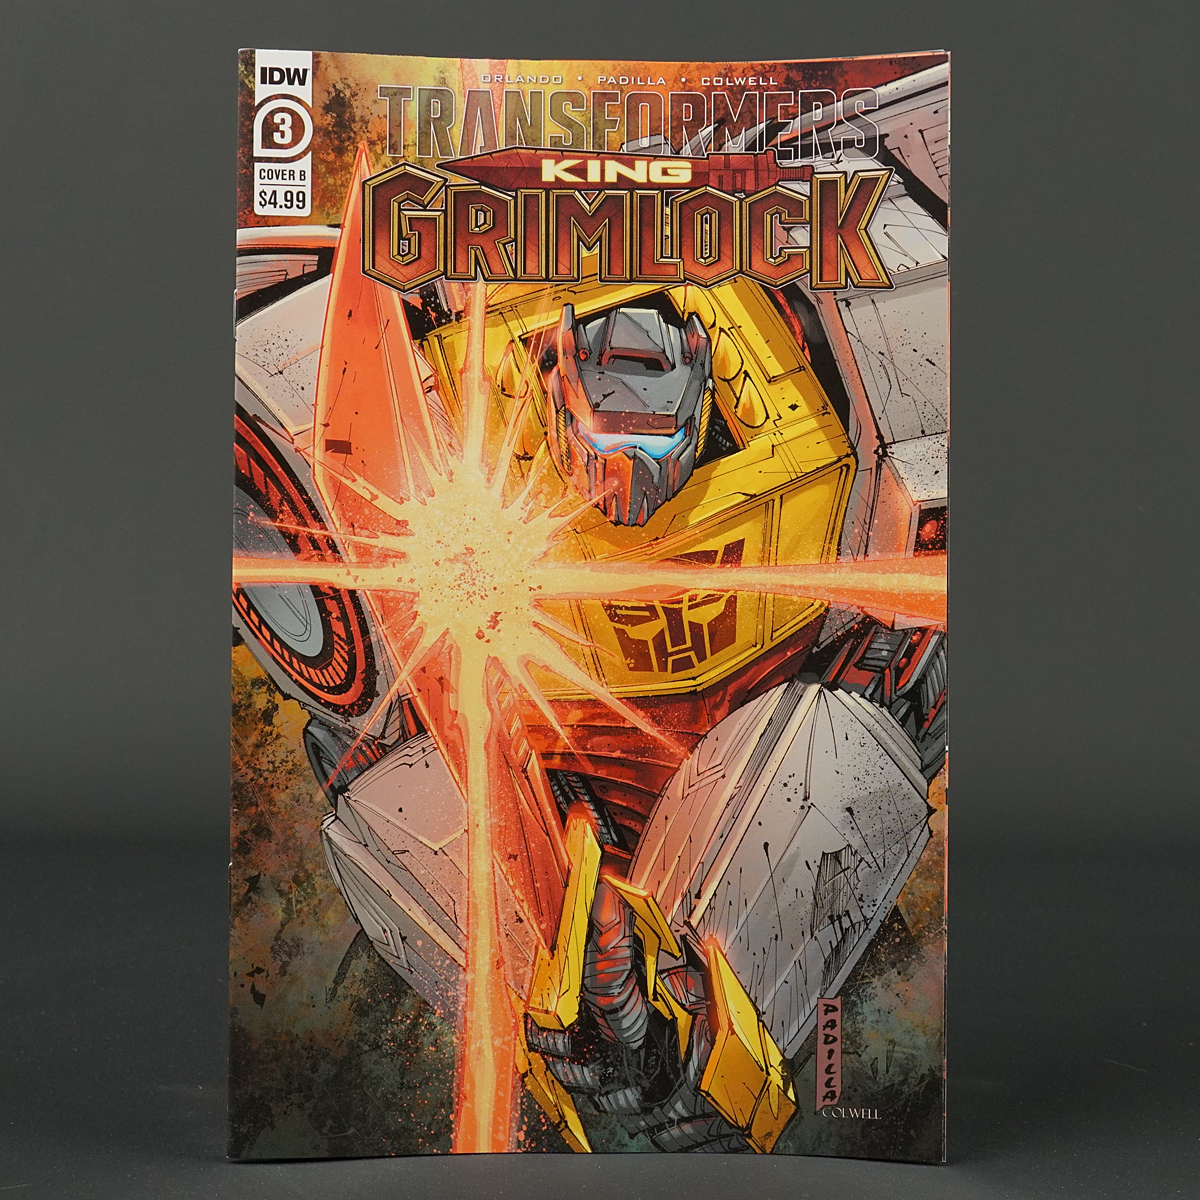 Transformers KING GRIMLOCK #3 Cvr B IDW Comics 2021 AUG210587 3B (CA) Padilla